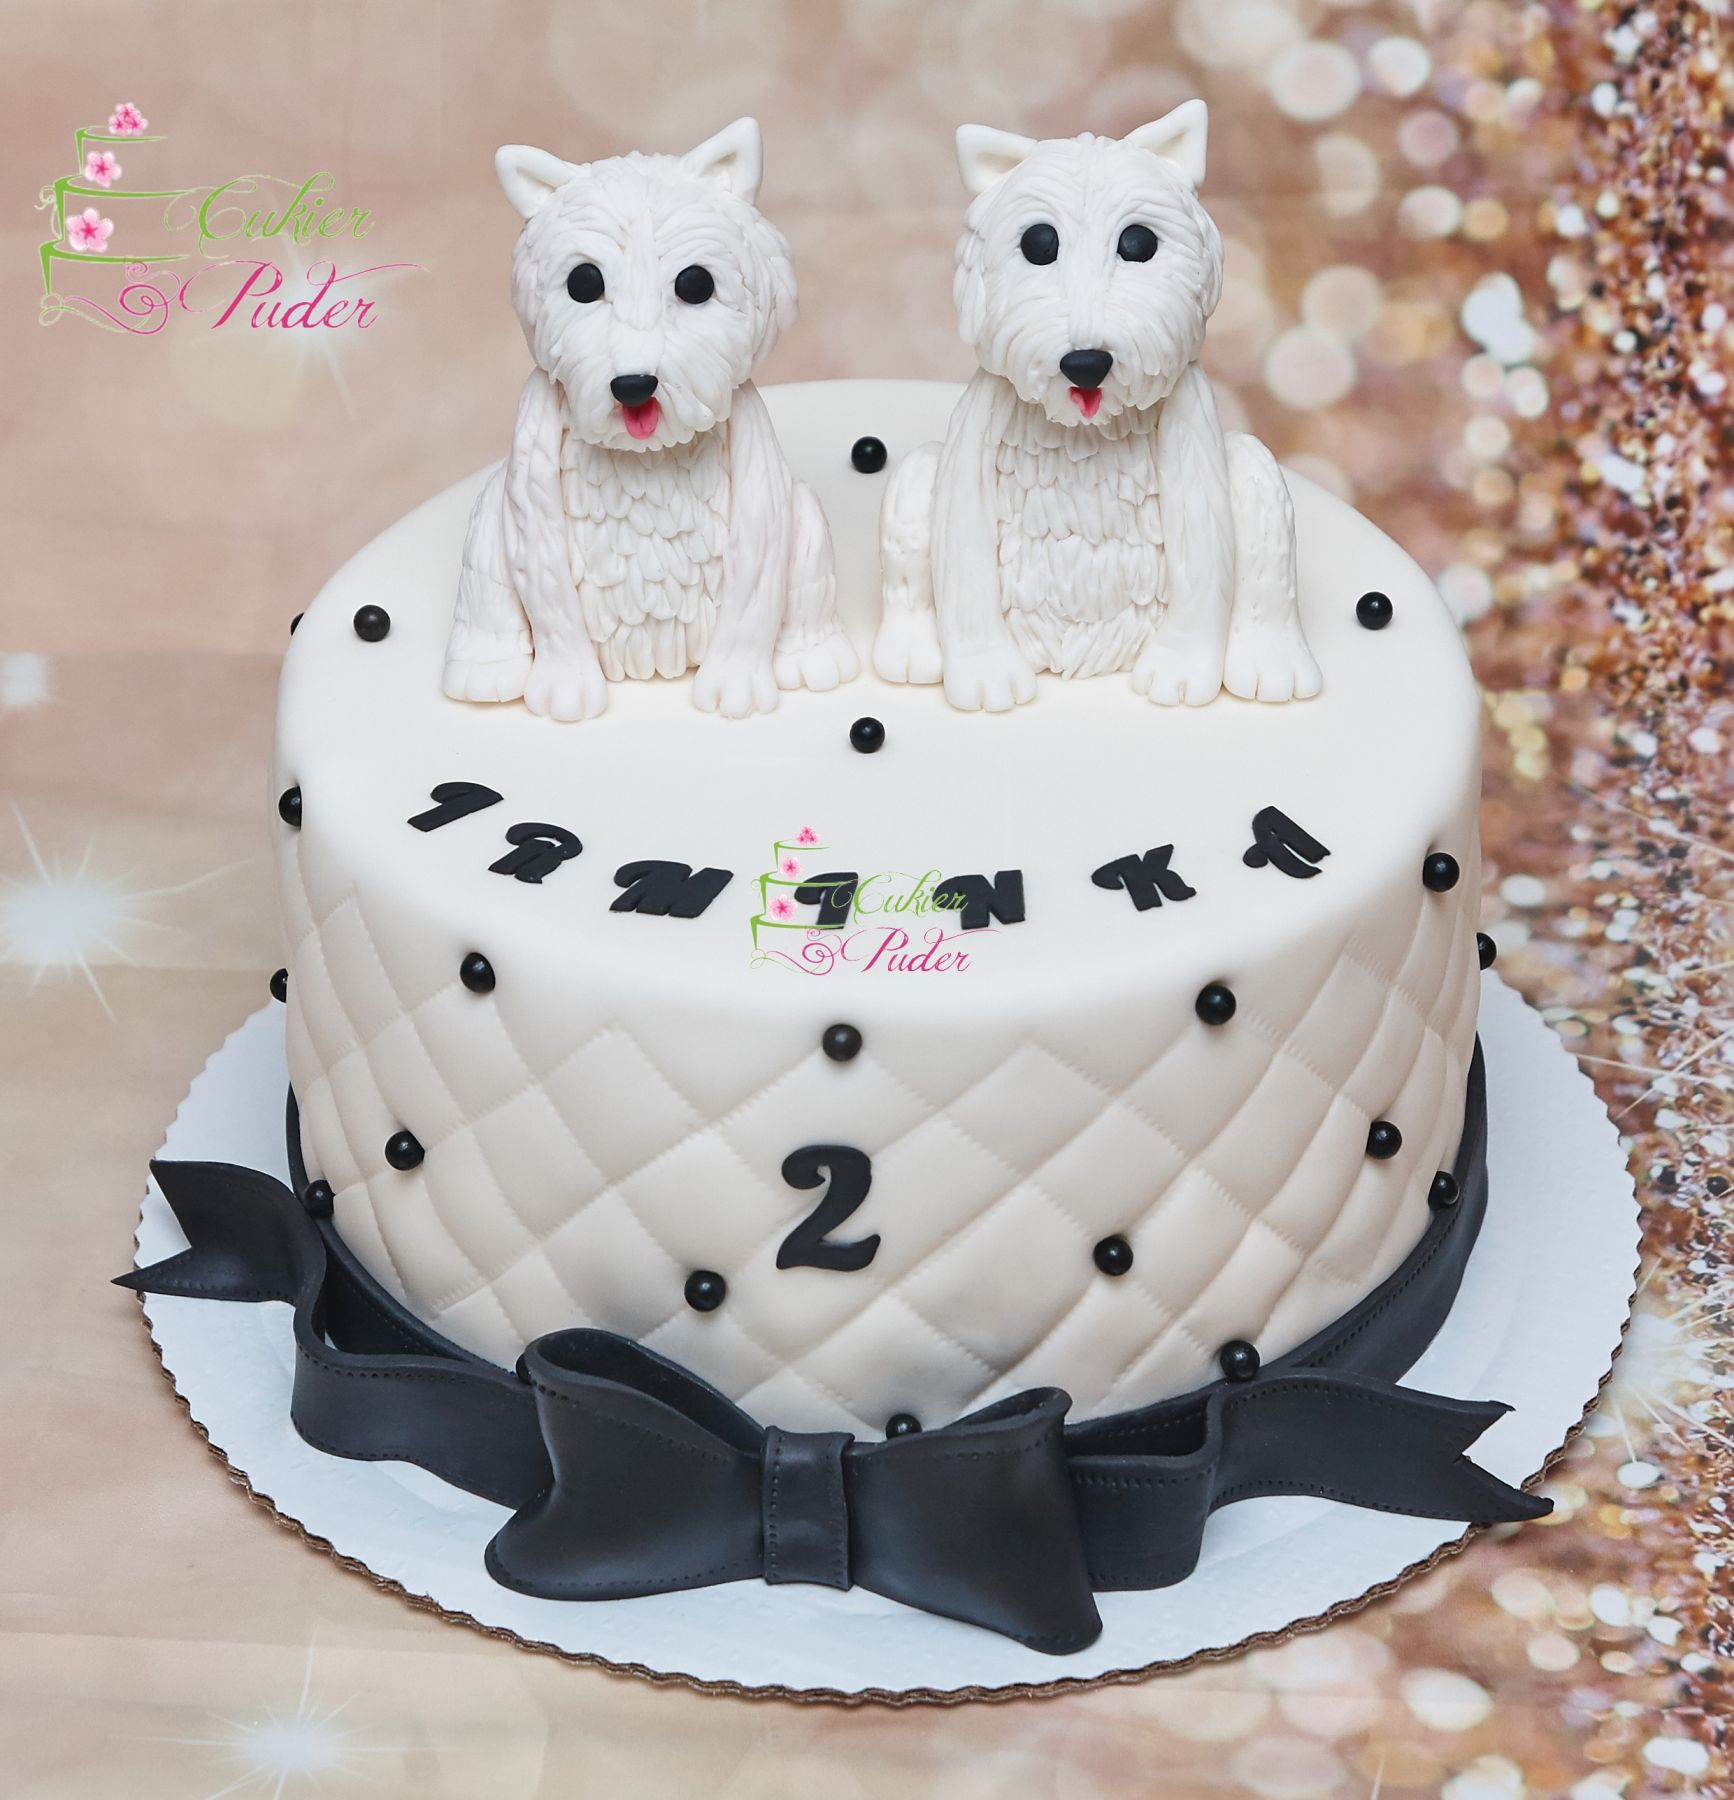 tort na urodziny - urodziny dziecka - minsk mazowiecki - figurki psow - pies - tort pikowany - czarno bialy - recznie wykonane figurki - tort dla dziewczynki - tort dla chlopca